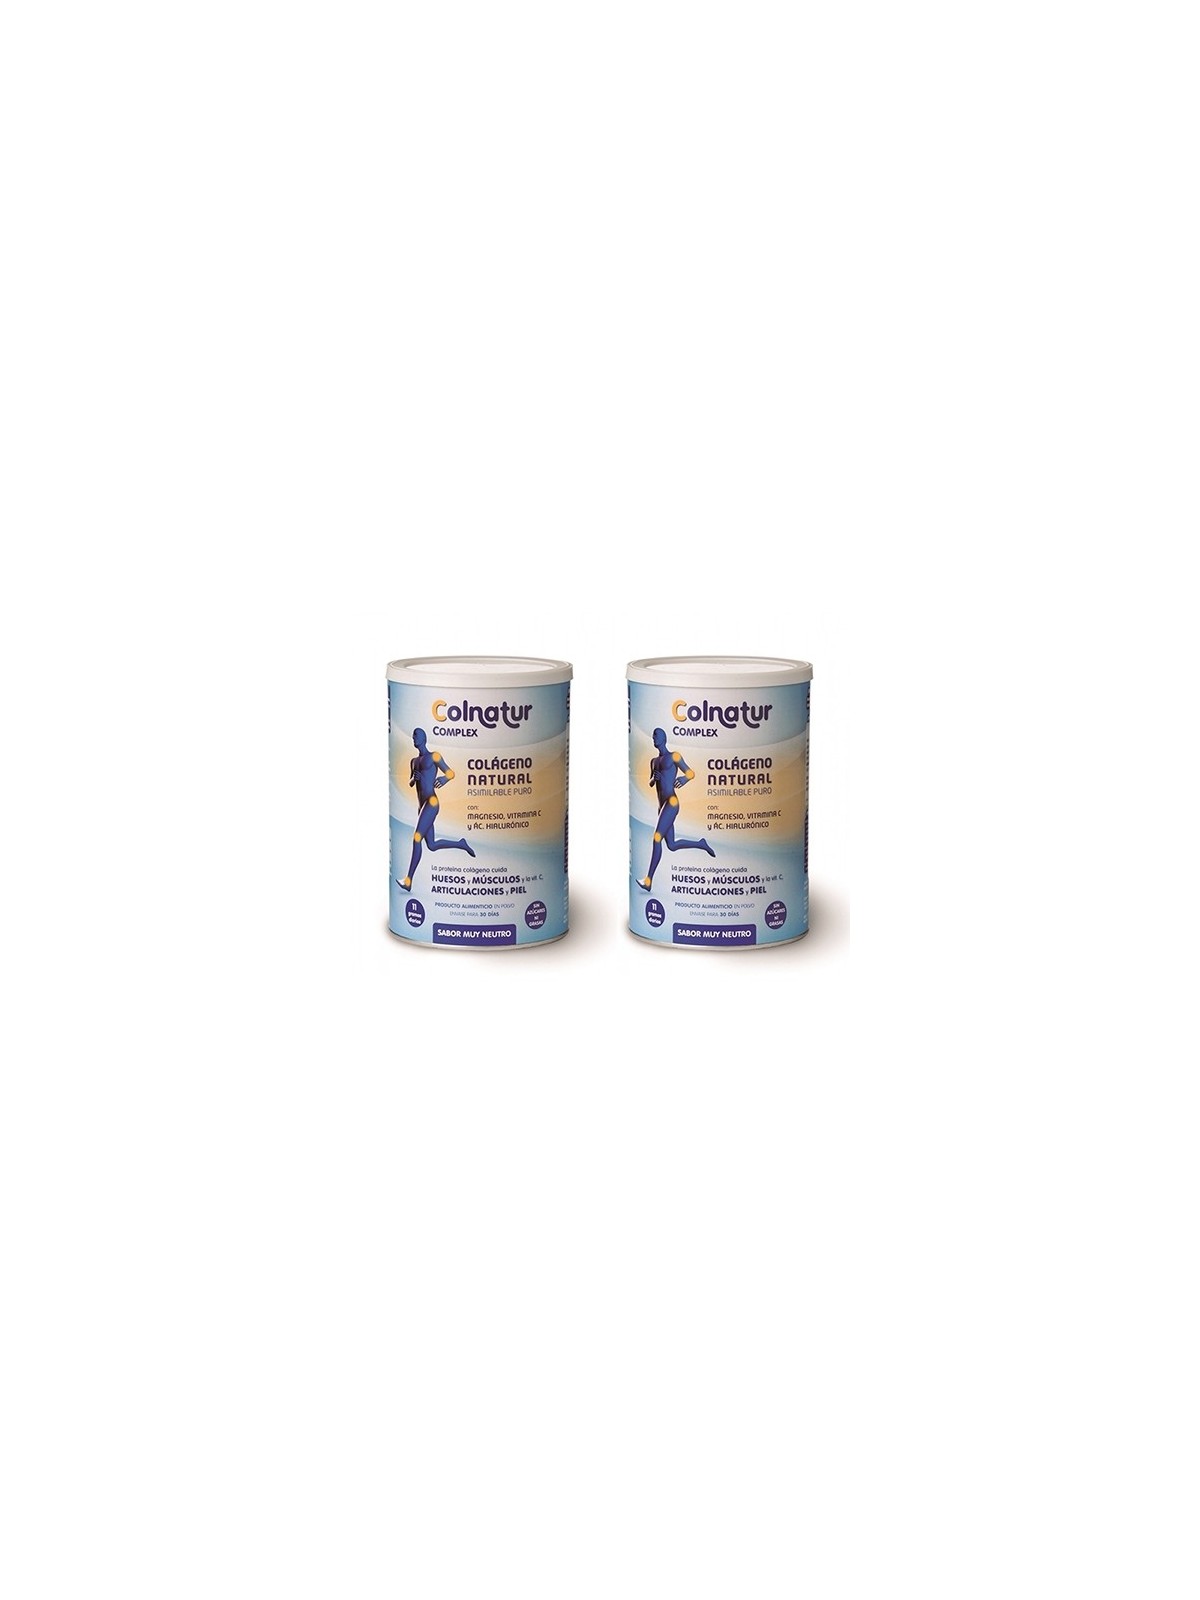 Colnatur complex colageno sabor muy neutro duplo 2x330gr - Farmacia en Casa  Online